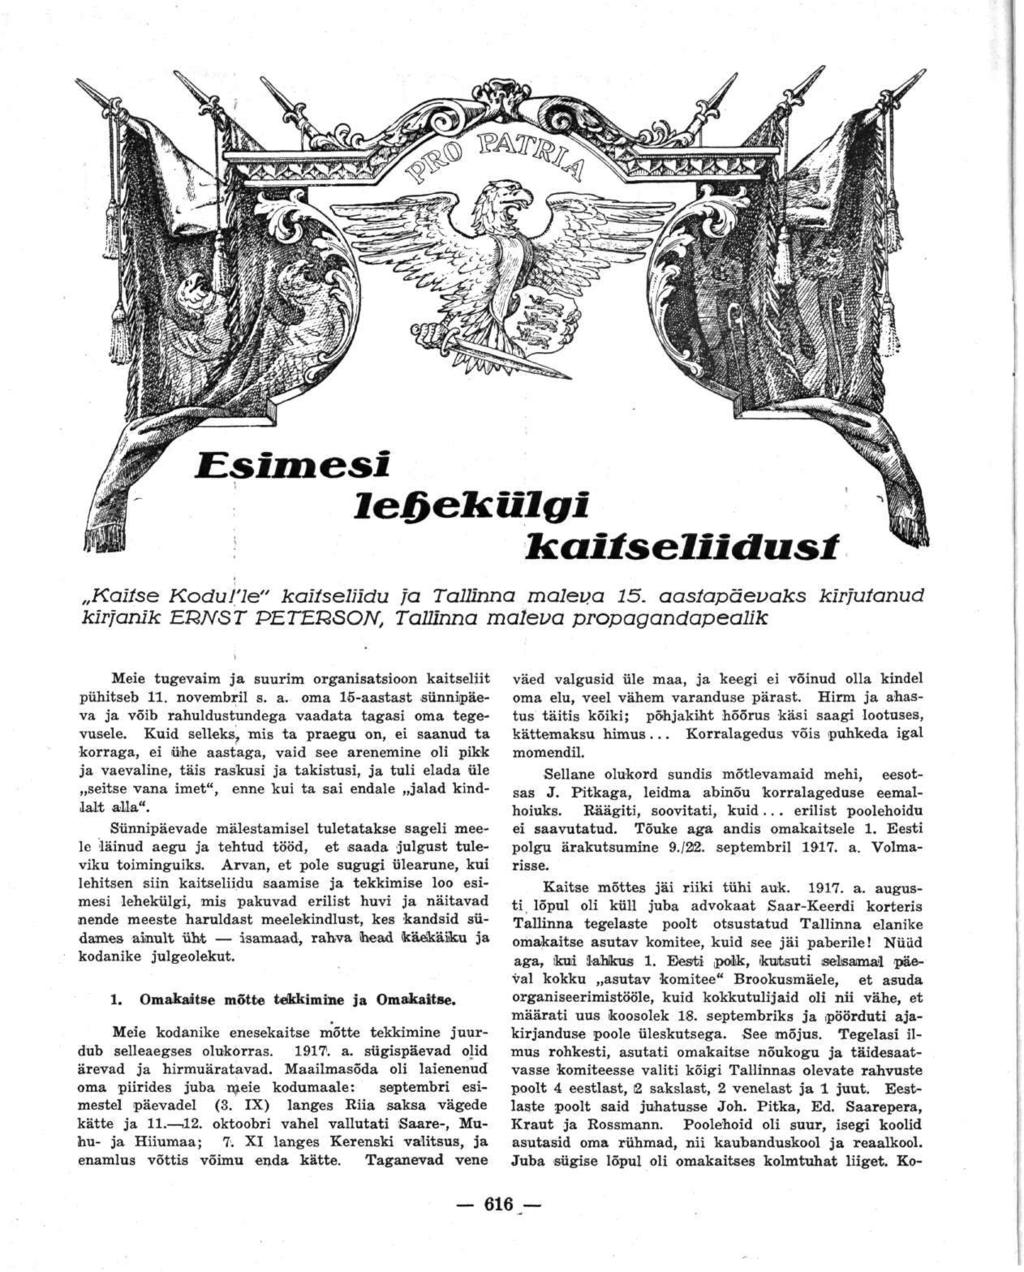 Esimesi lehekülgi kaitseliidust Kaitse Kodu!'le" kaitseliidu ja Tallinna maleva 15.